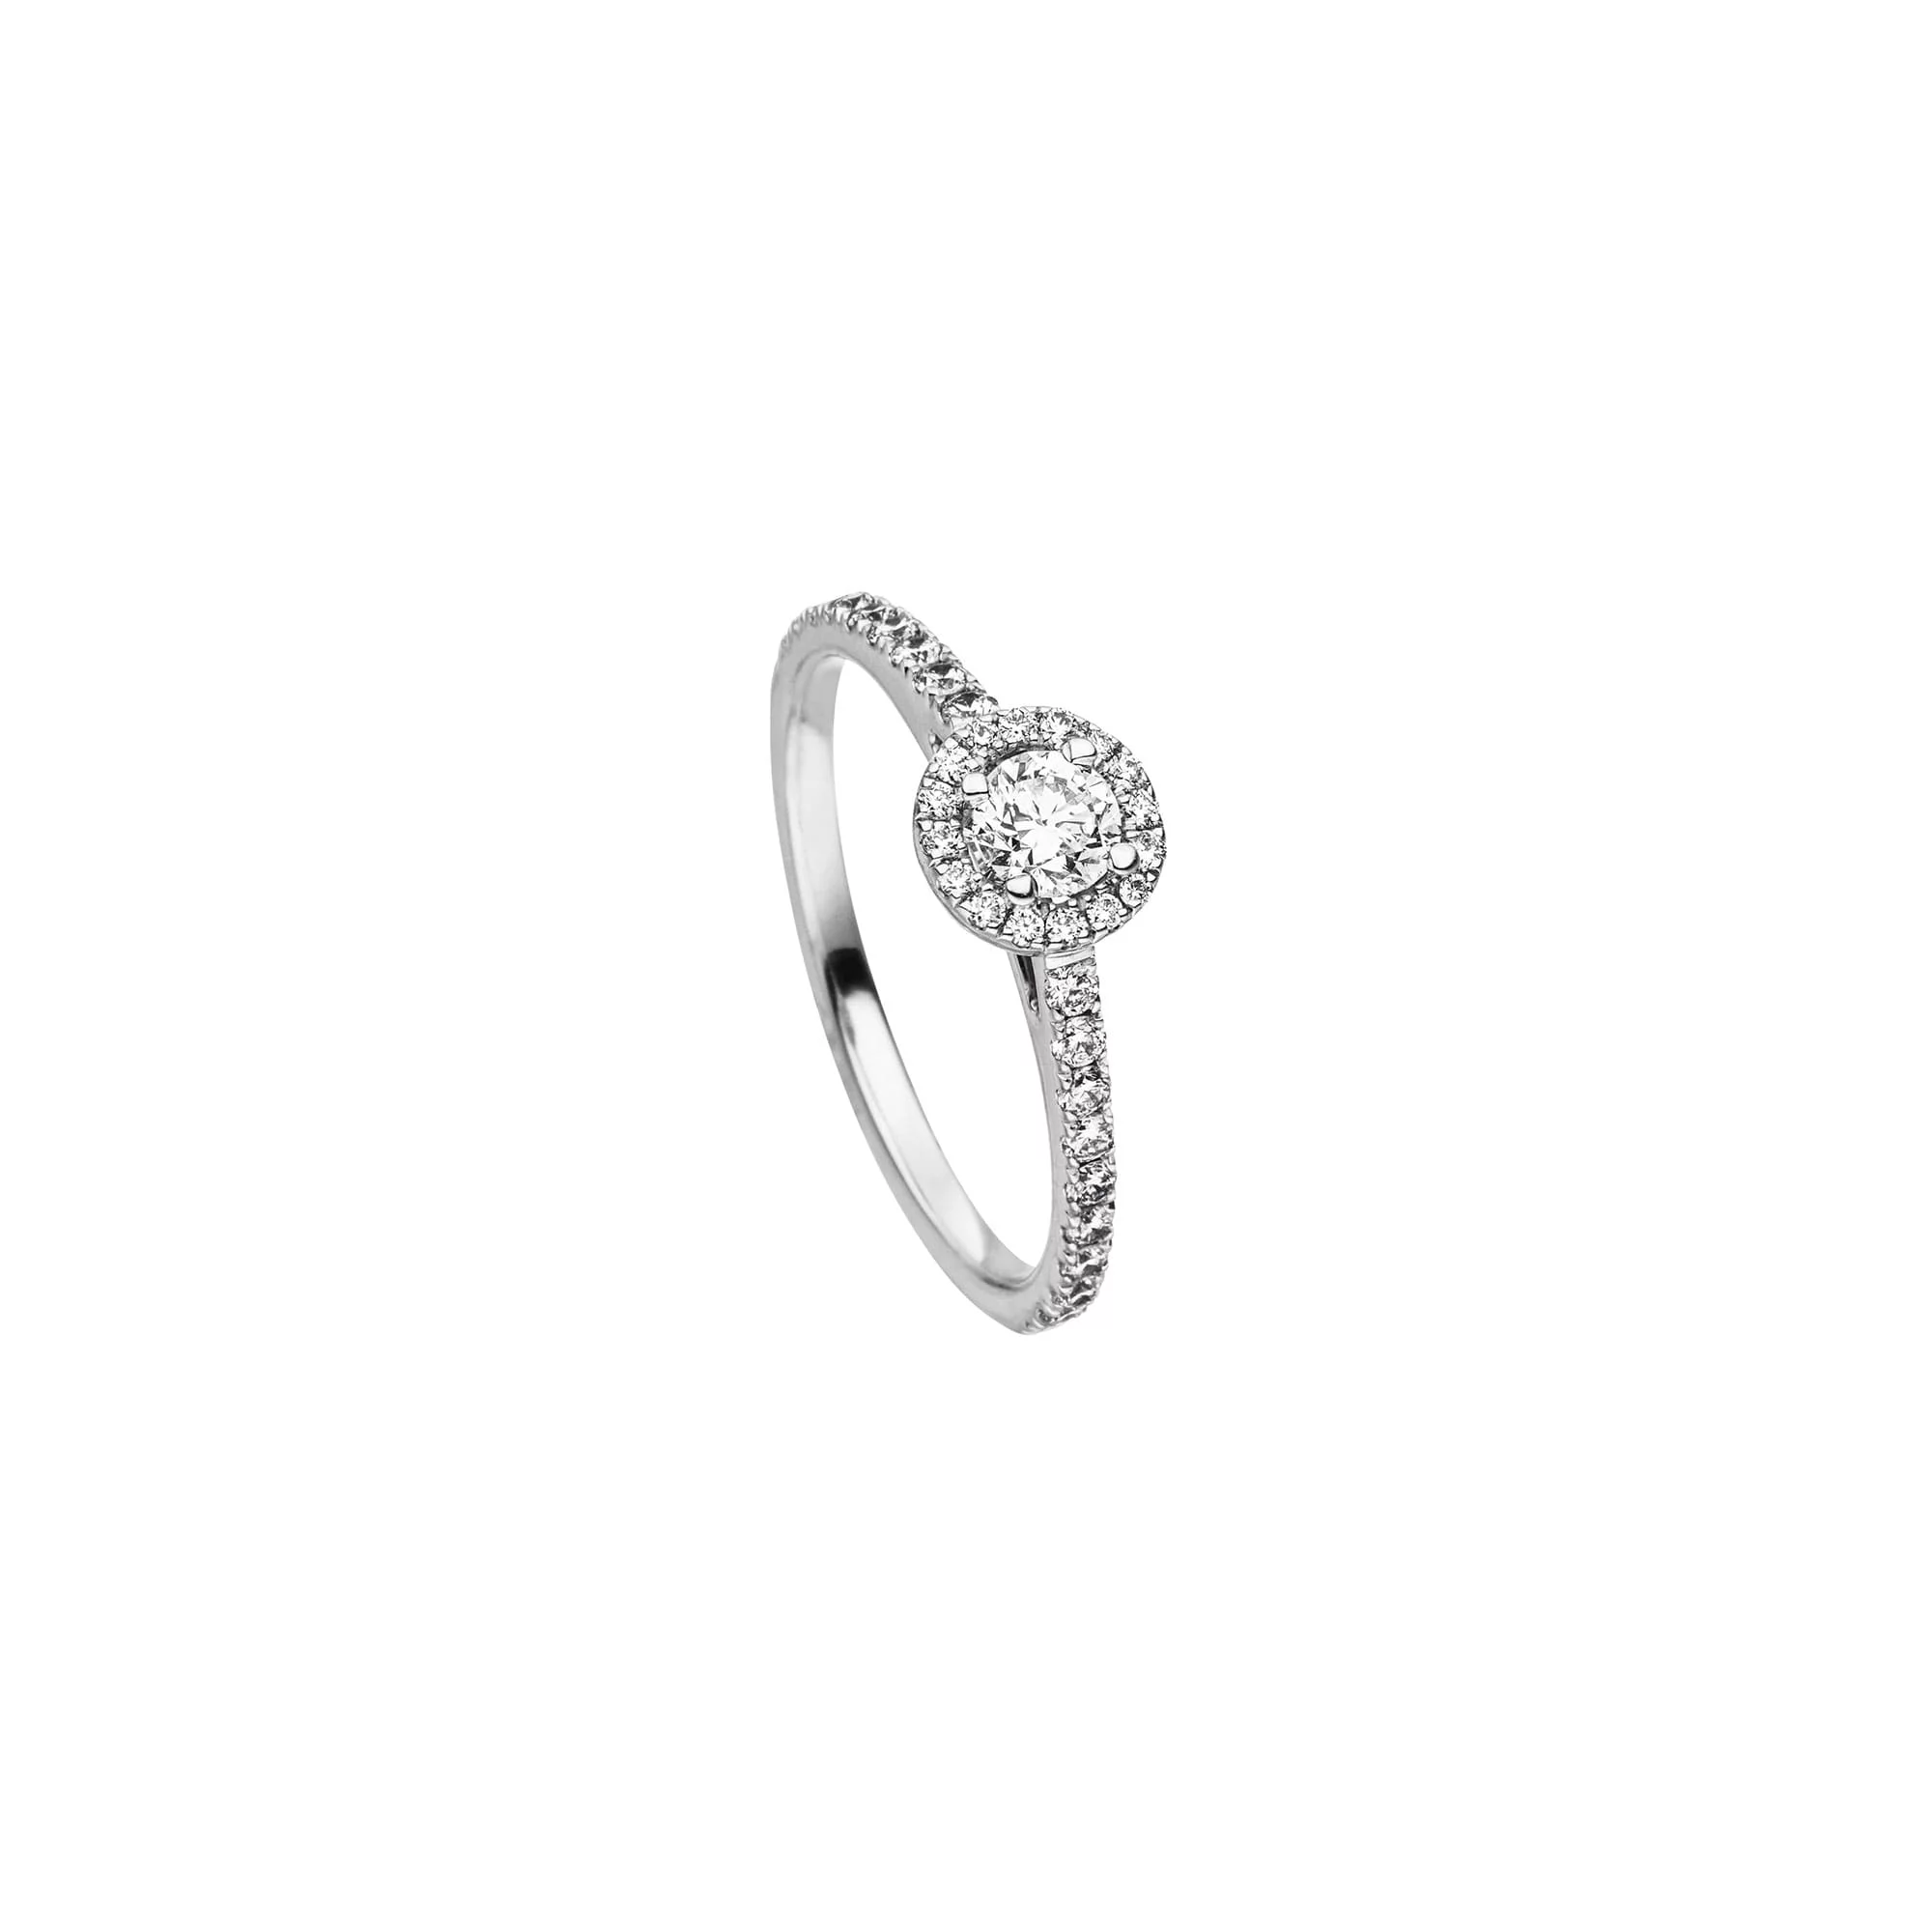 Platin Ring "Classico" mit Baguette Diamanten von Henrich & Denzel bei Juwelier Fridrich in München